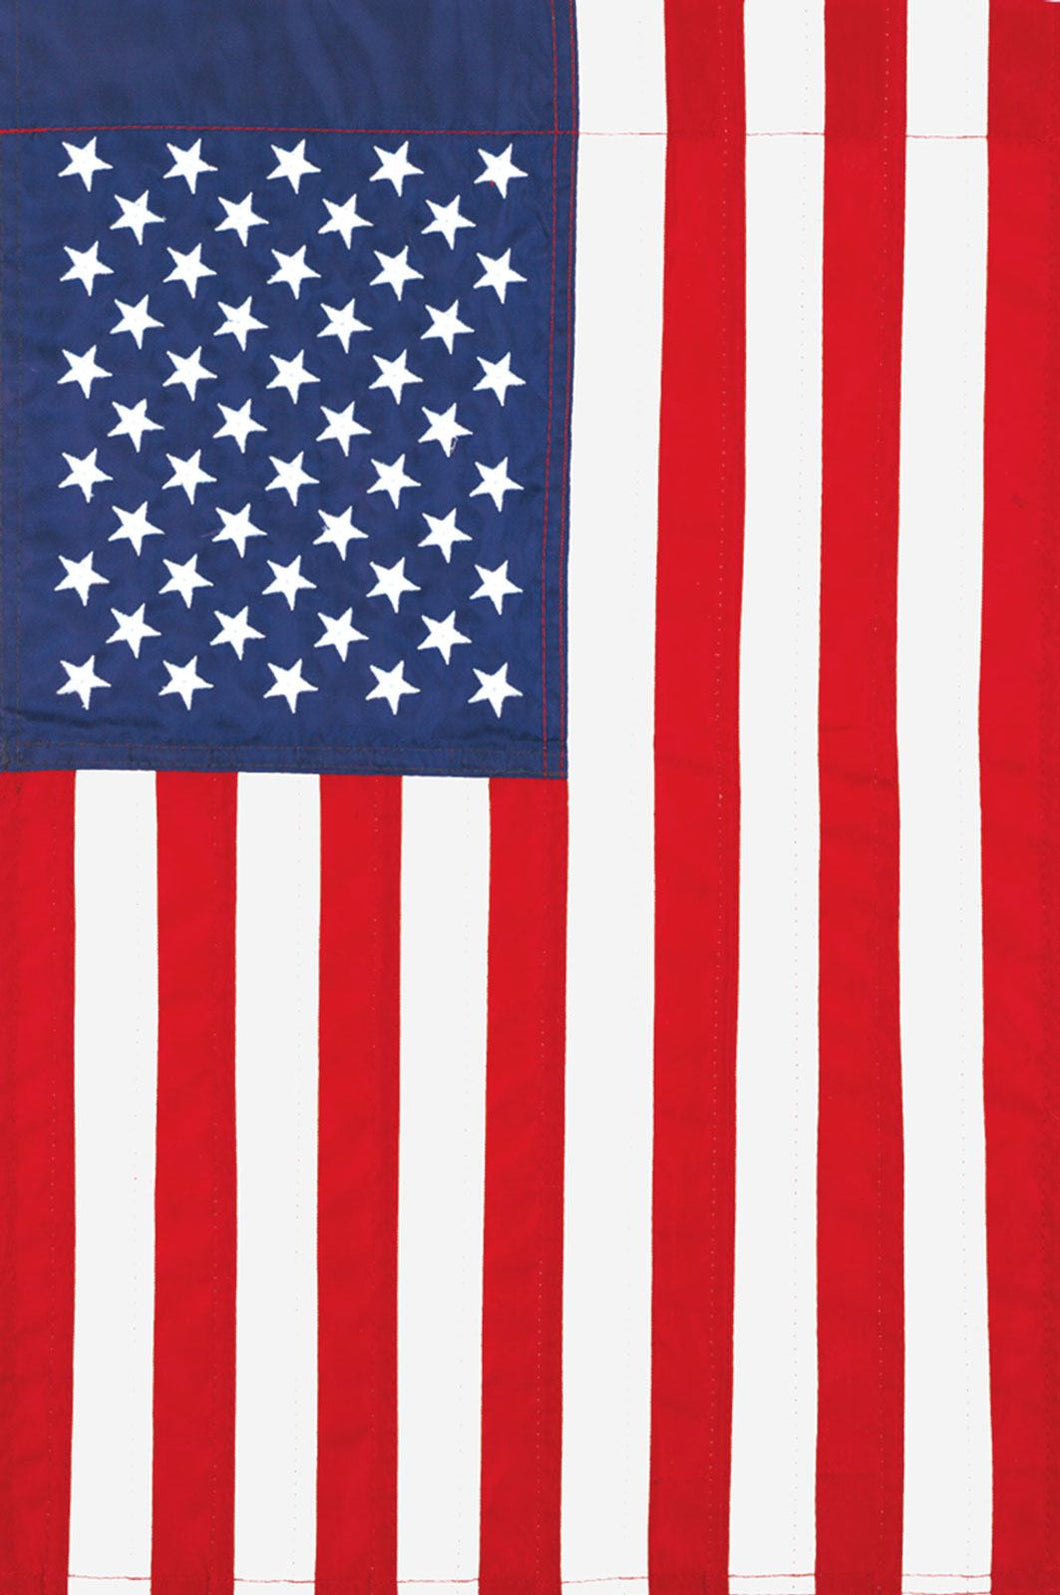 Applique America Garden Flag